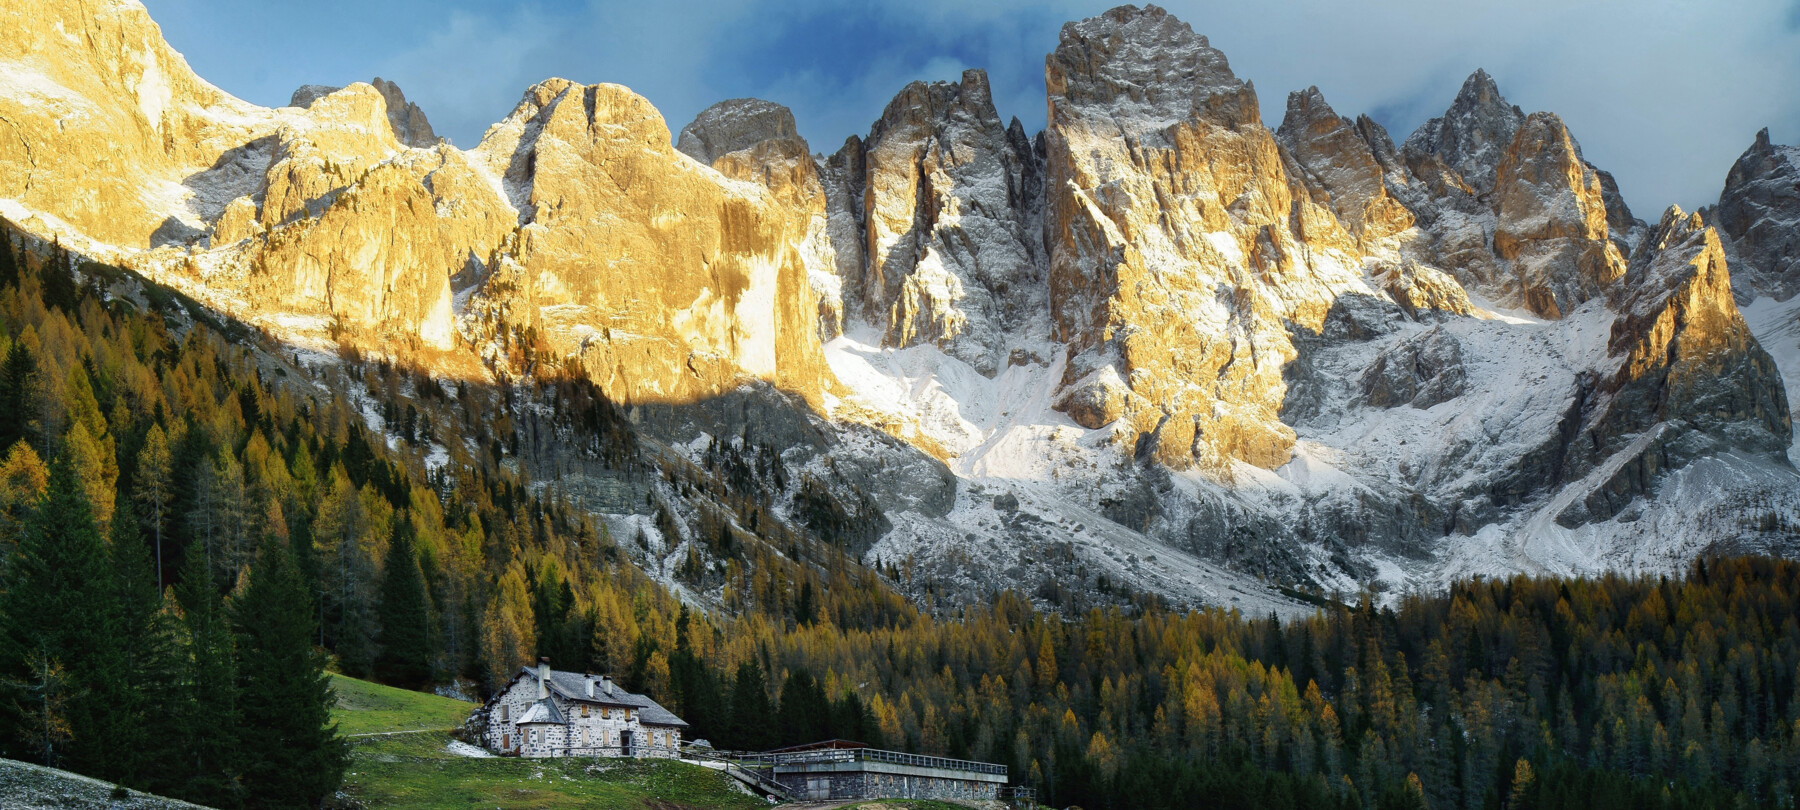 Das Trentino in 3 Tagen erleben: Frühling und Sommer 